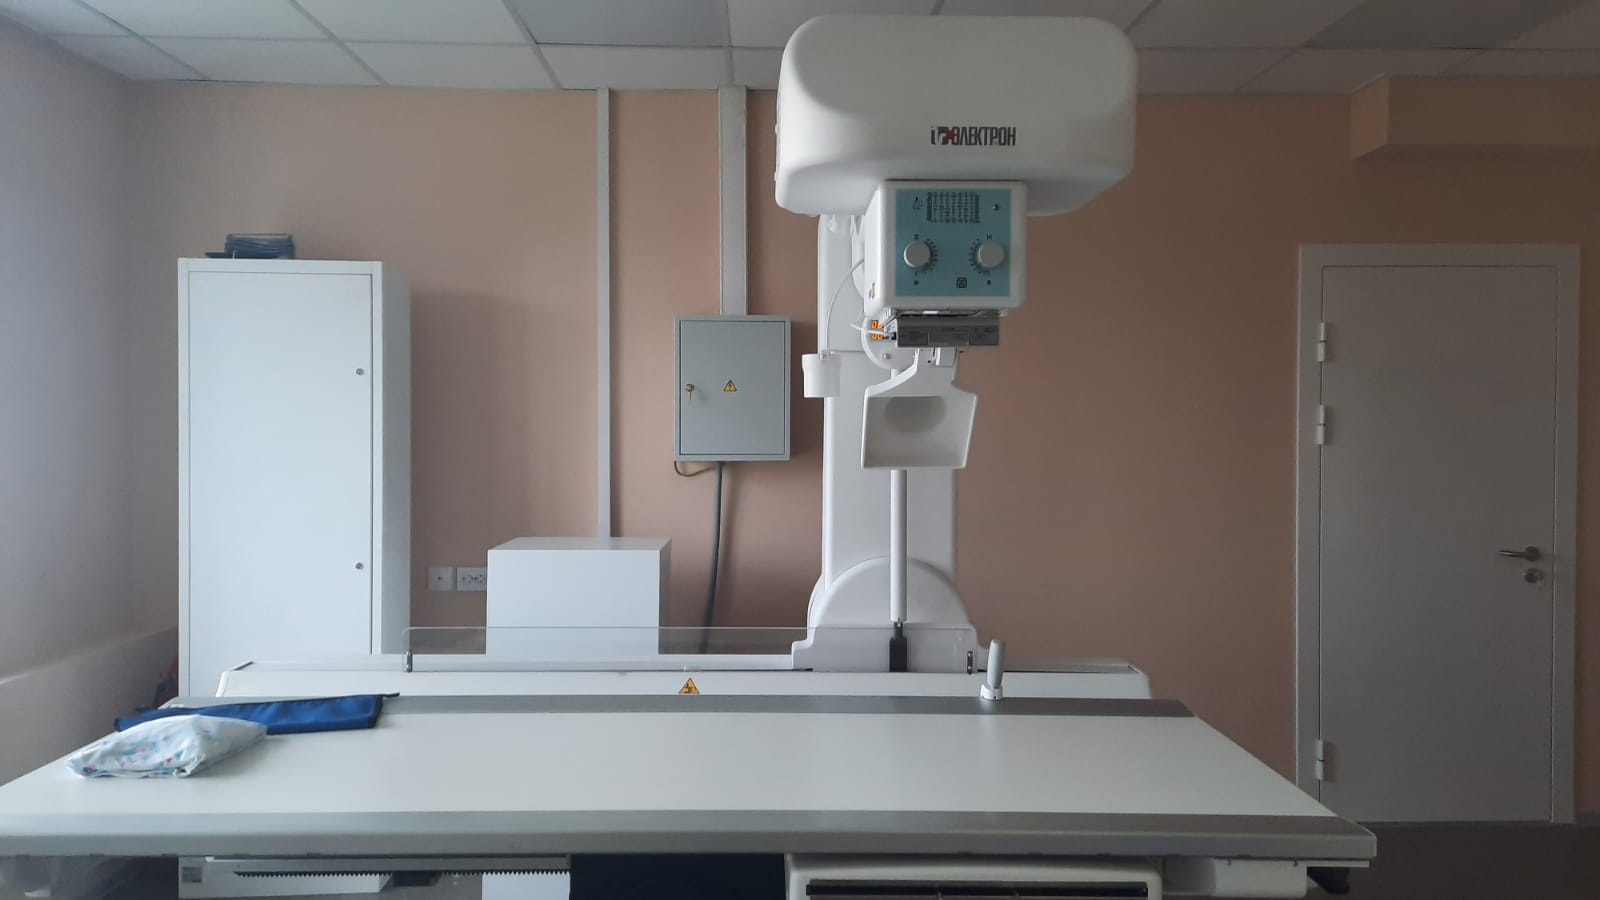 Мурманские поликлиники получили 4 новых рентген-аппарата